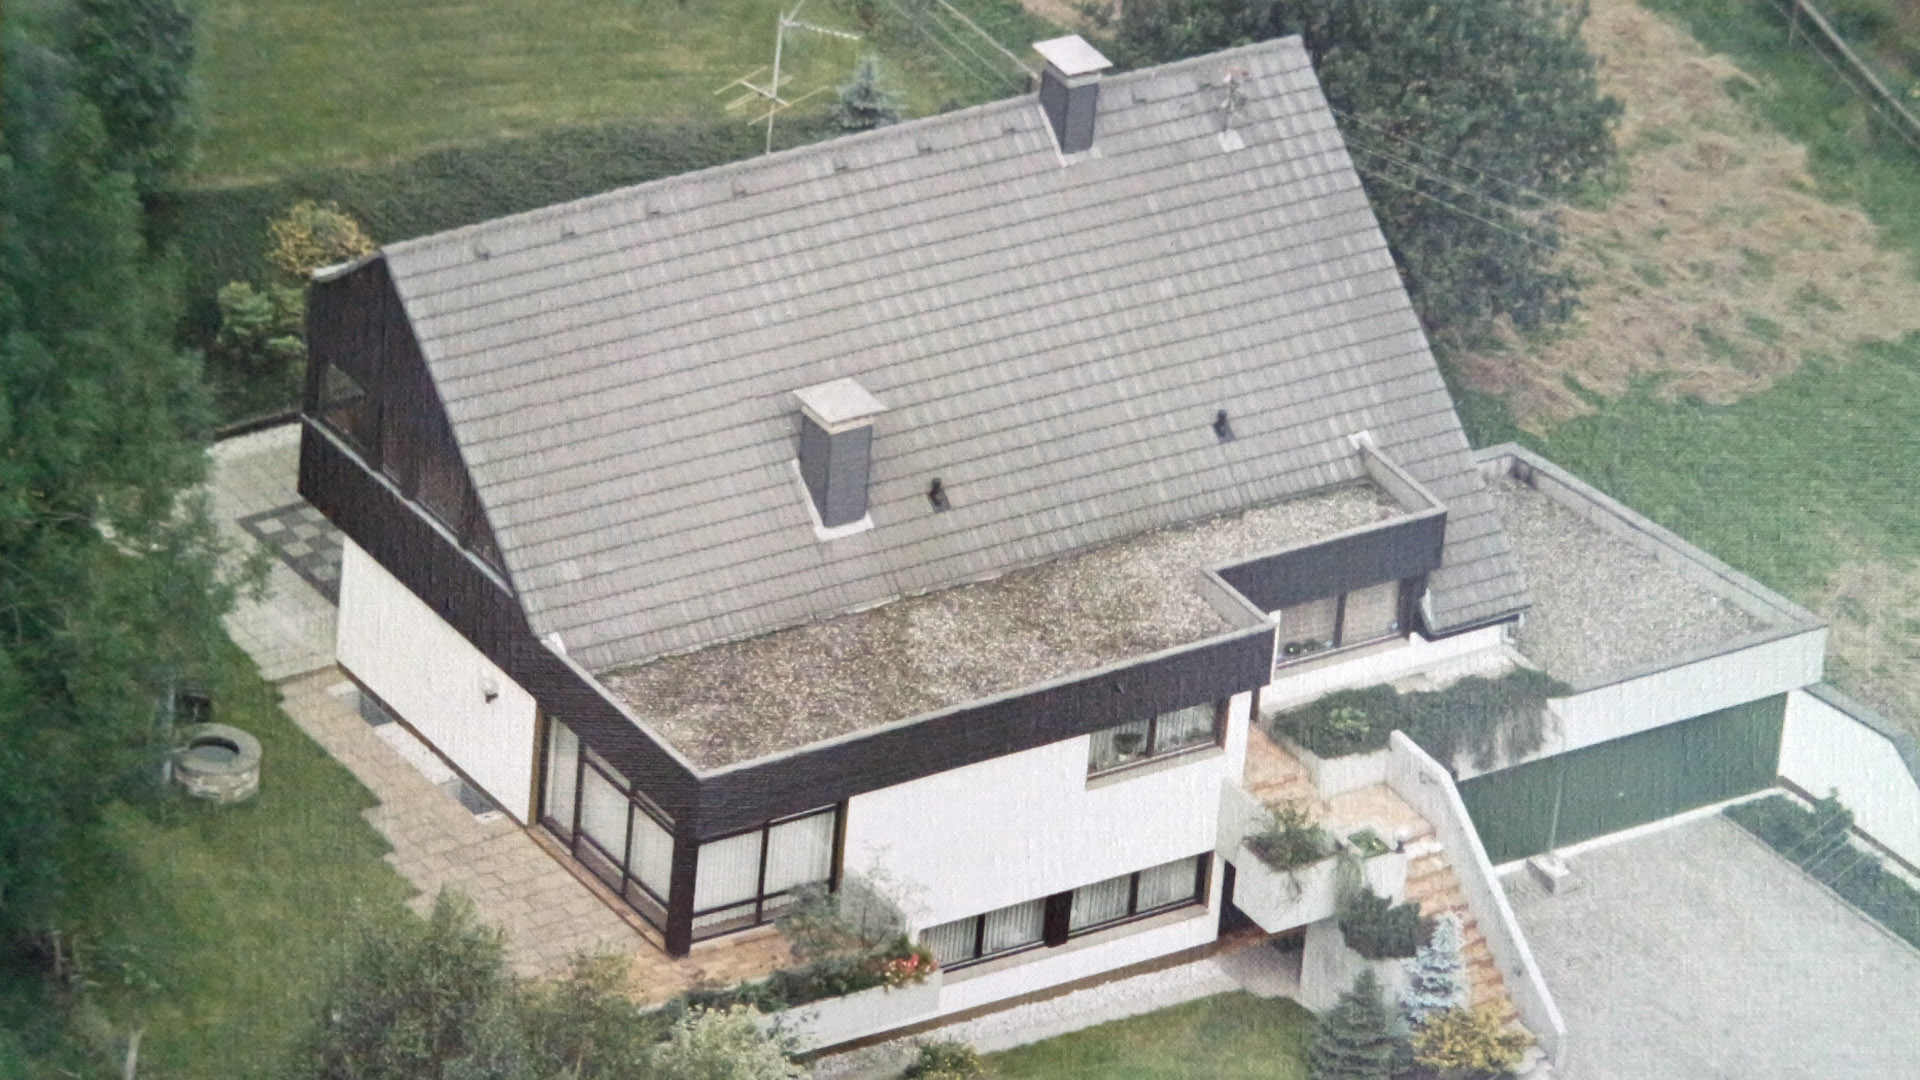 Gummersbach: Architektenhaus in familienfreundlicher Wohnlage, Luftaufnahme aus den frühen 80er Jahren (Baujahr 1978)